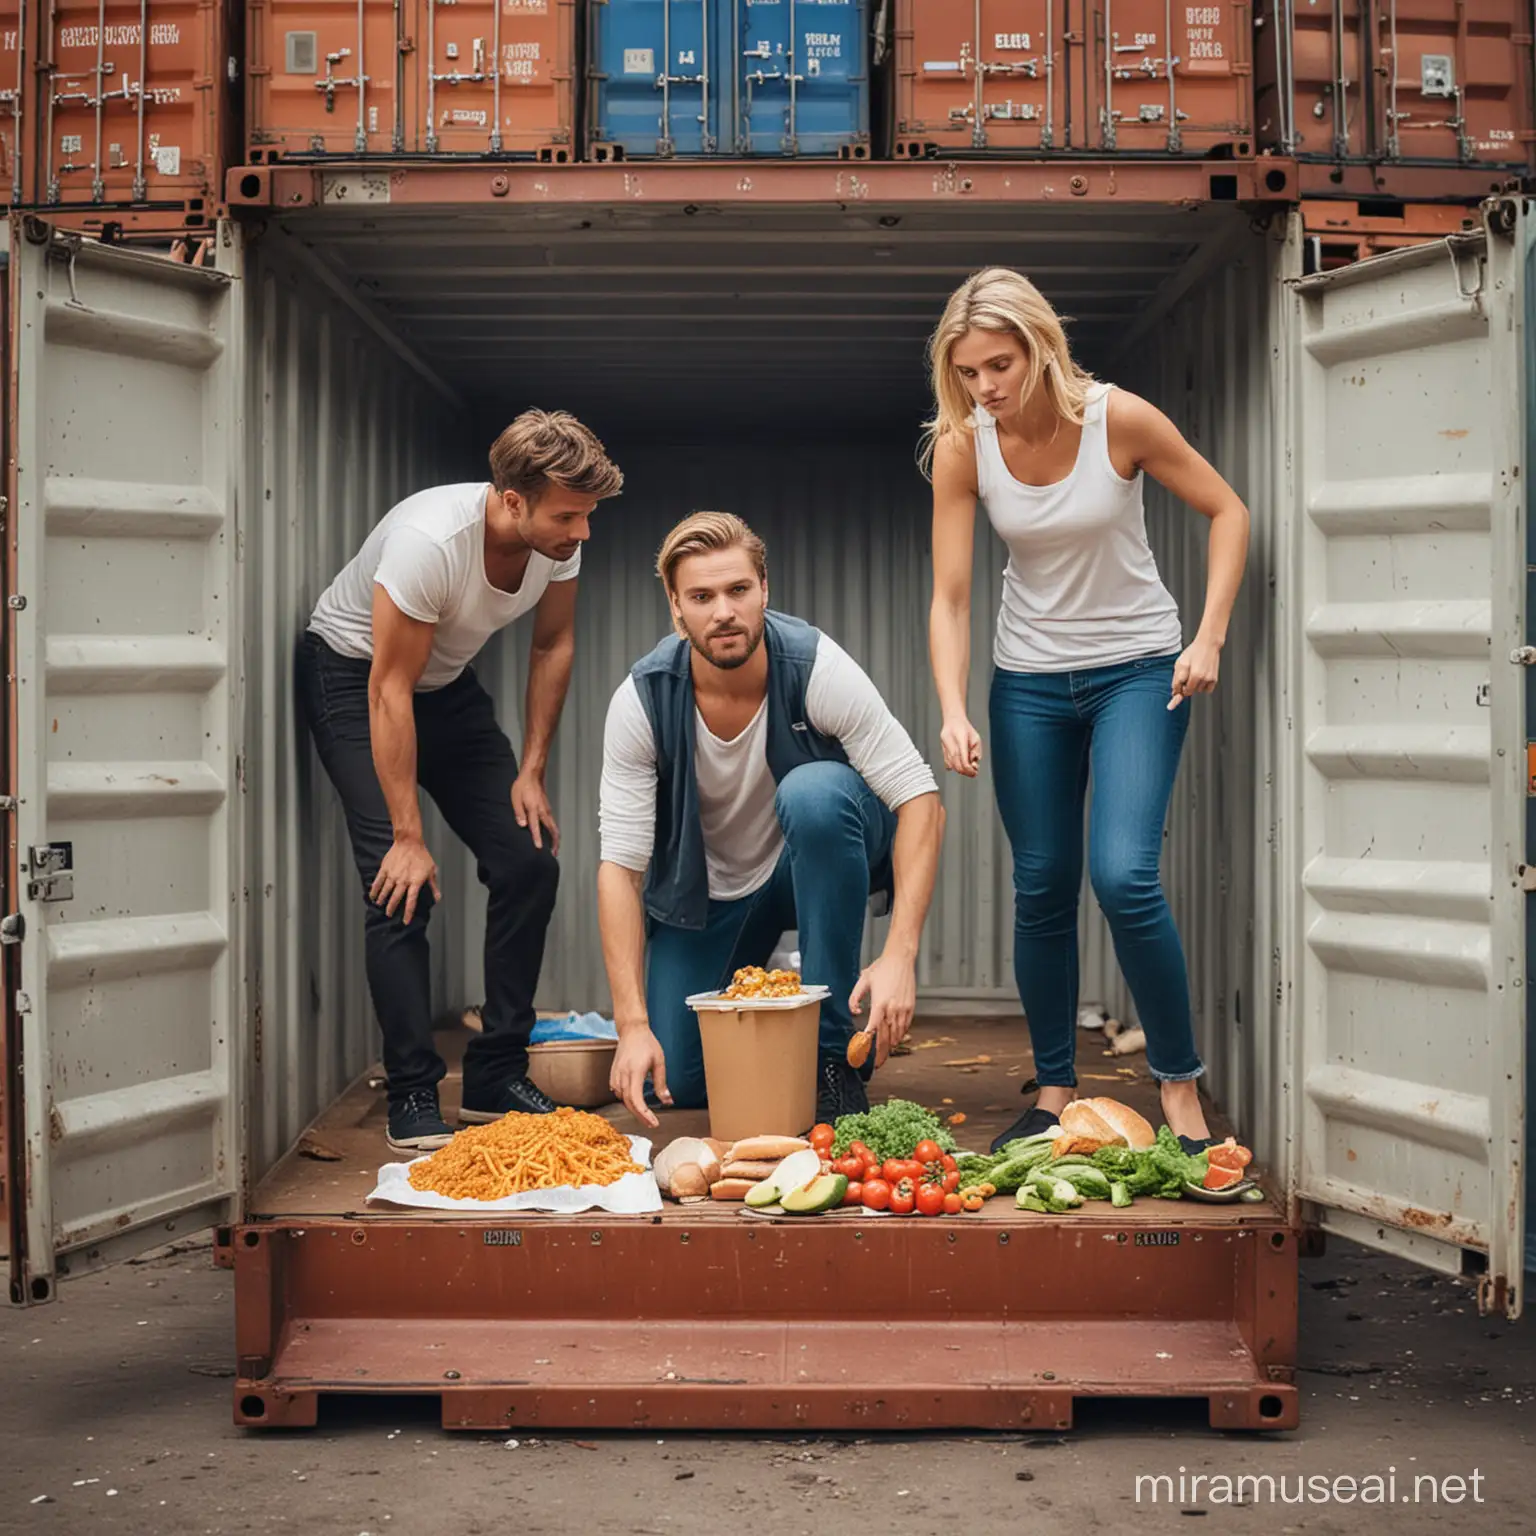 Lav et billede af en mand og dame nede i en container og leder efter mad